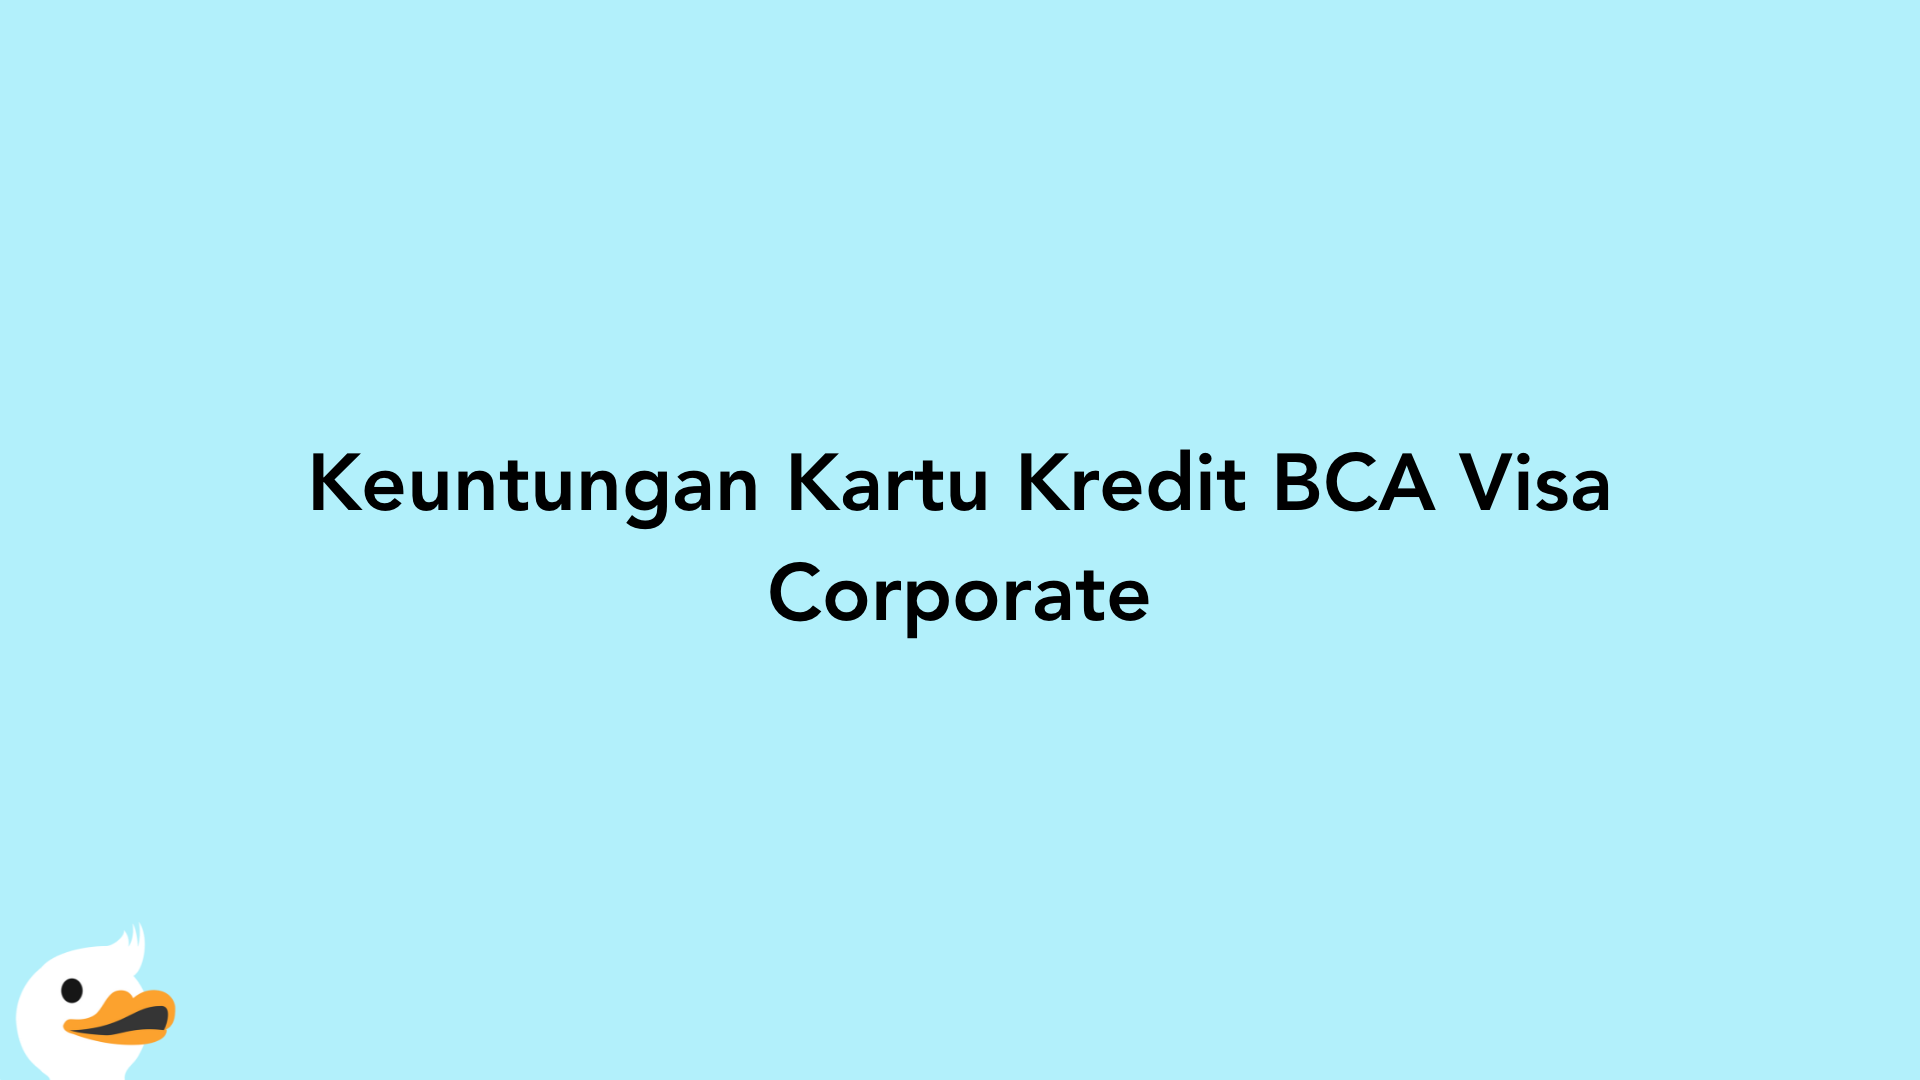 Keuntungan Kartu Kredit BCA Visa Corporate